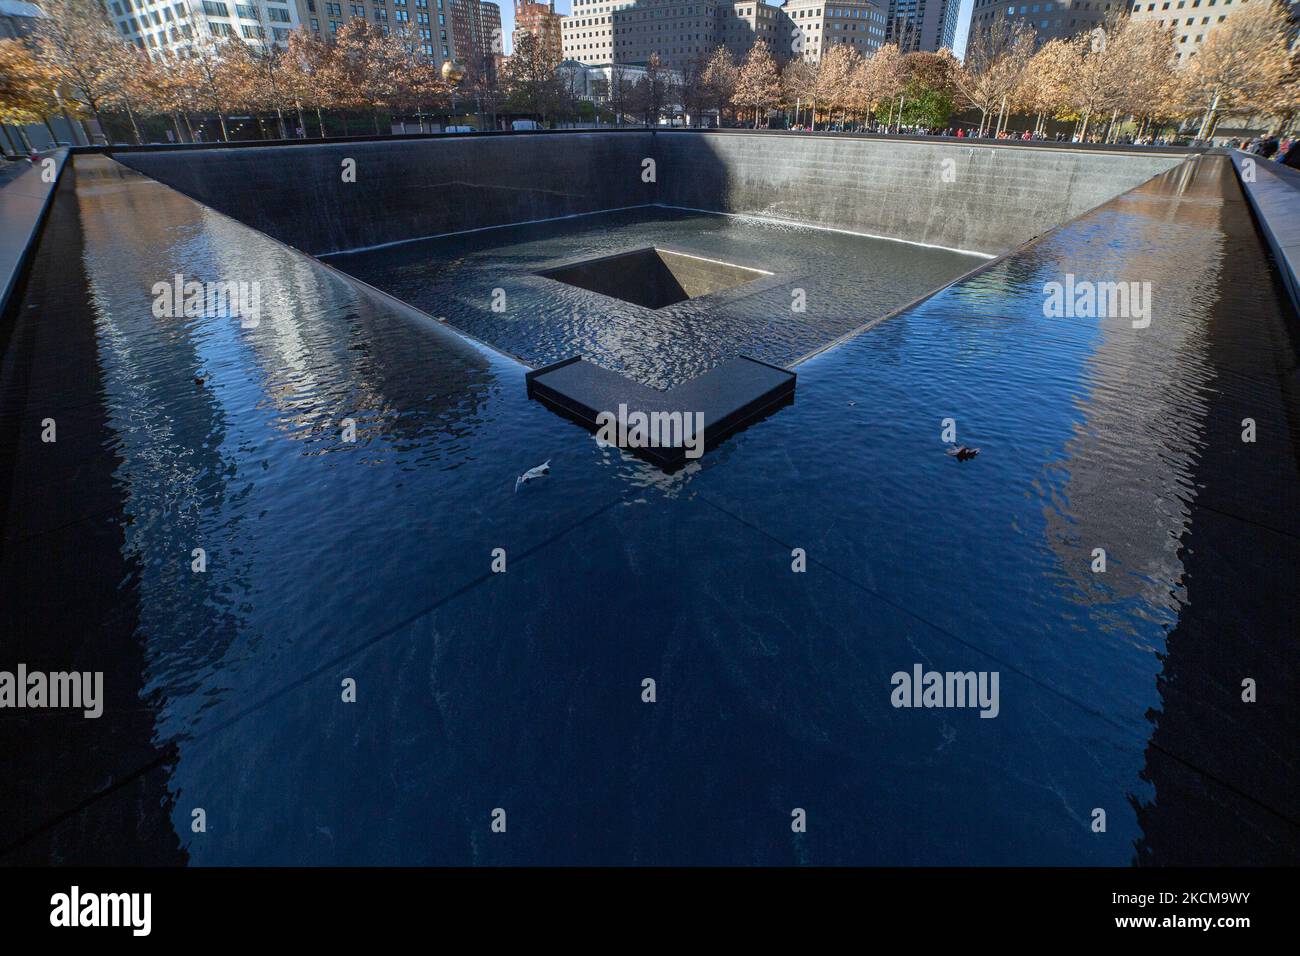 Le 20th anniversaire de l'attaque du Centre mondial du commerce qui a eu lieu sur 11 septembre 2001, connu sous le nom de 9/11, est marqué par le retrait complet des forces américaines d'Afghanistan. Site commémoratif du WTC connu sous le nom de Ground Zero ou la pile après les attaques de 11 septembre dans le Lower Manhattan à New York avec deux piscines la piscine nord et la piscine sud à côté du parc commémoratif et du musée avec les noms apparaissant sur les panneaux autour de la piscine. New York, NY, Etats-Unis sur 25 janvier 2020 (photo de Nicolas Economou/NurPhoto) Banque D'Images